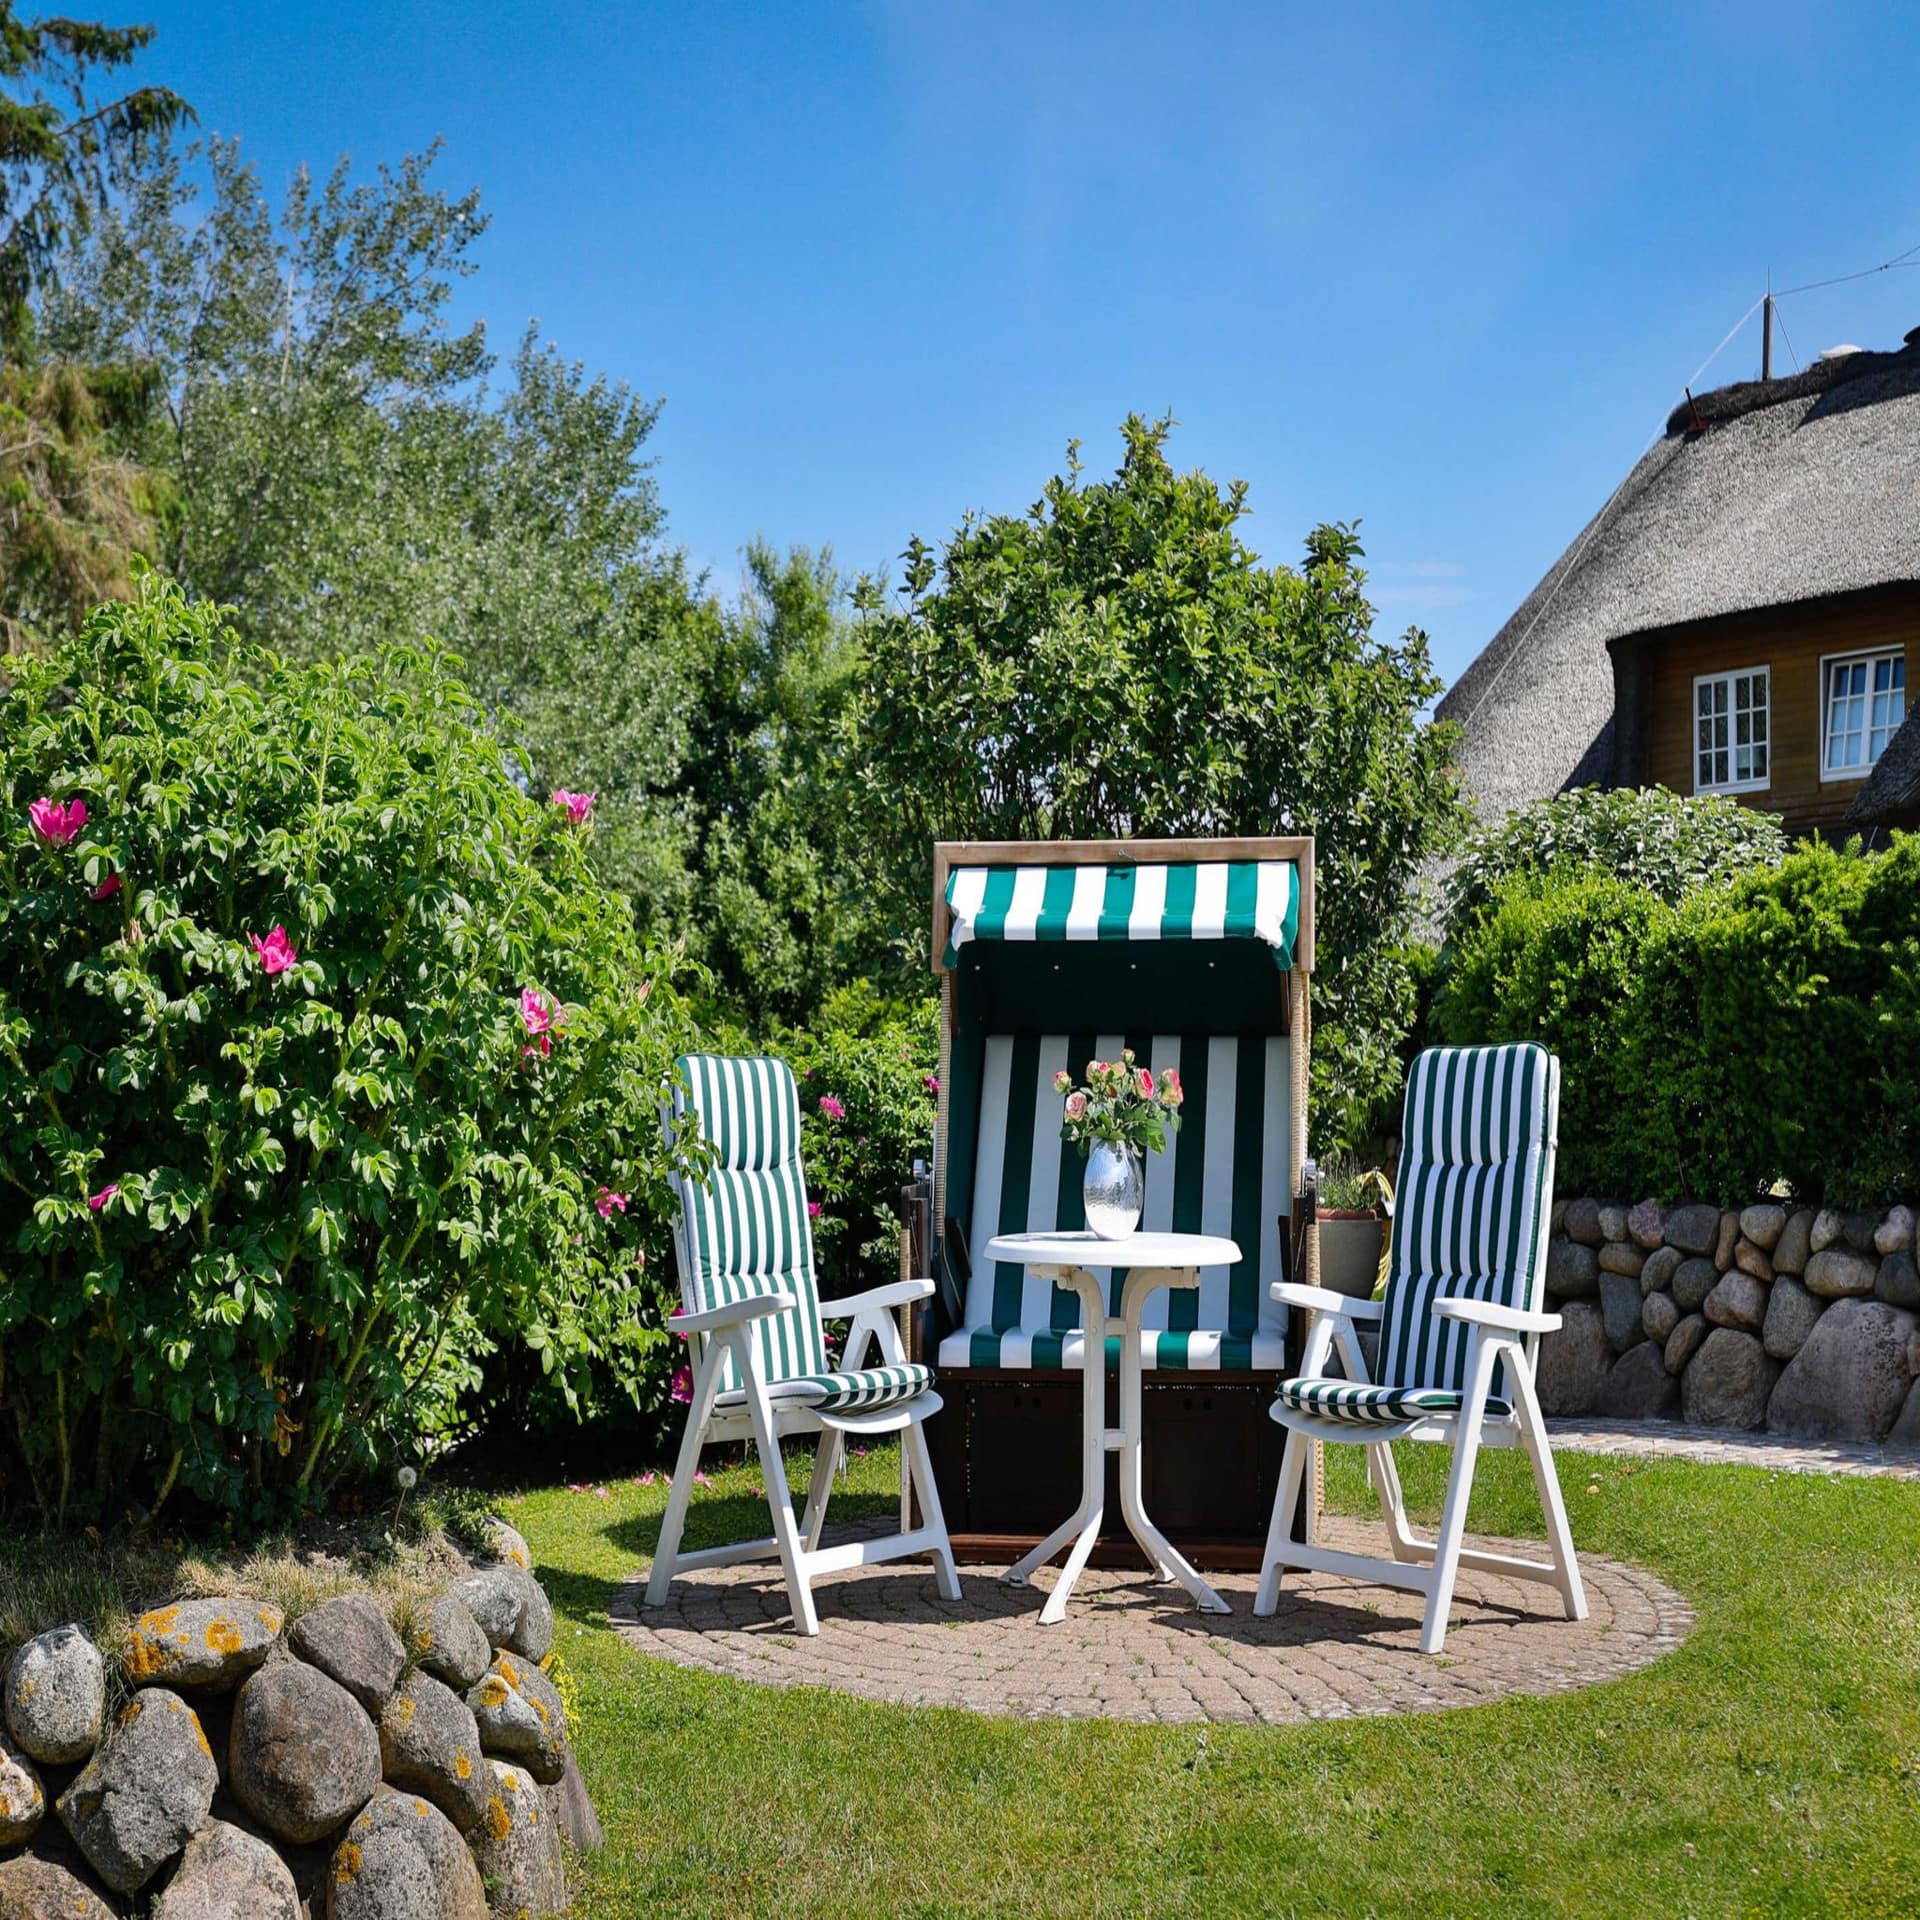 Ein grün-weiß gestreifter Strandkorb, 2 Stühle und 1 Tisch mit Blumen im Garten bei Sonnenschein.